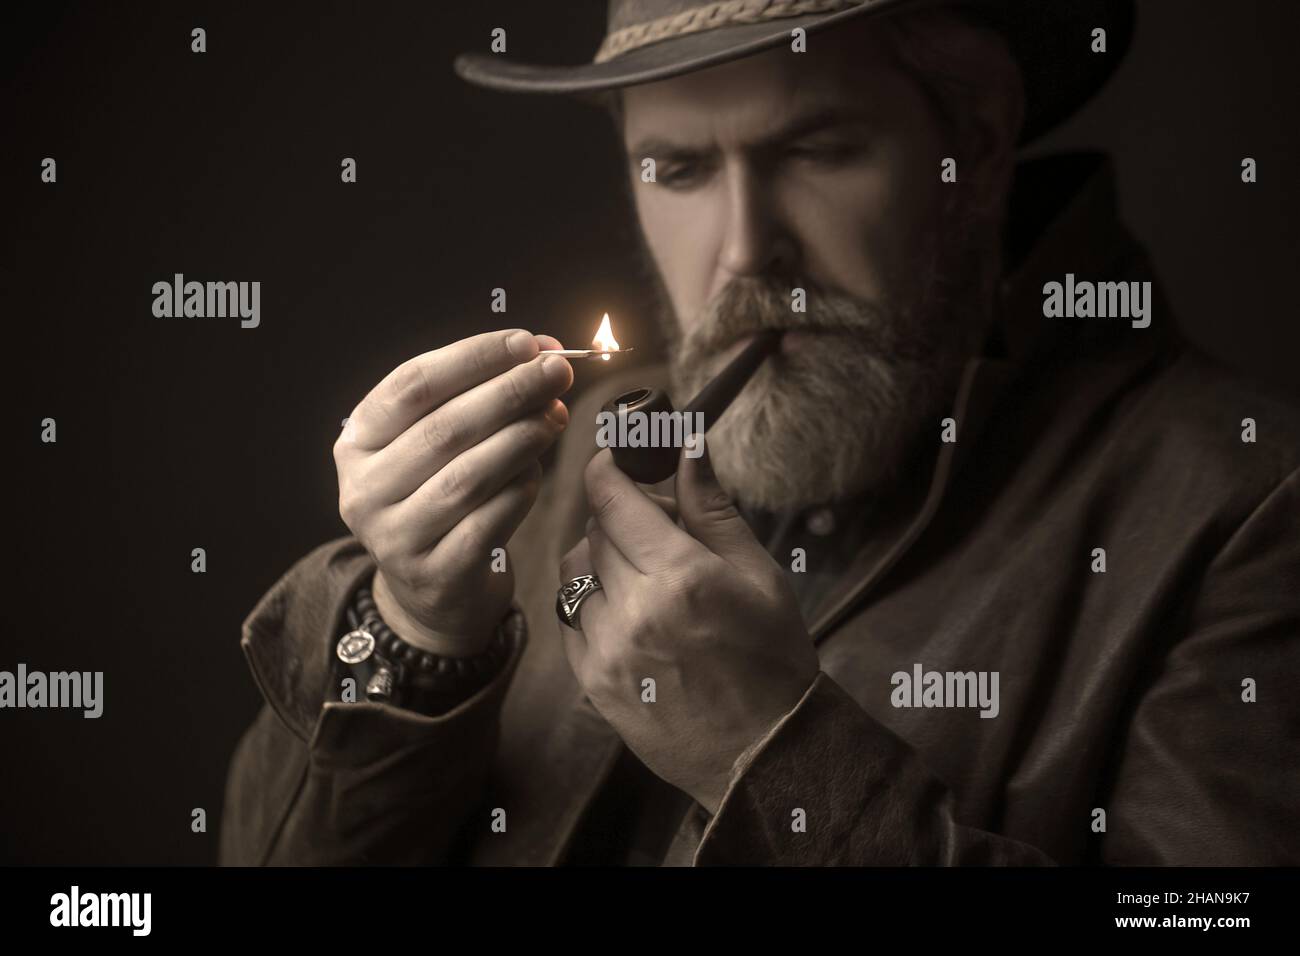 Bärtiger Mann, der Hut trägt und eine Pfeife raucht, sieht sehr ernst aus. Stockfoto